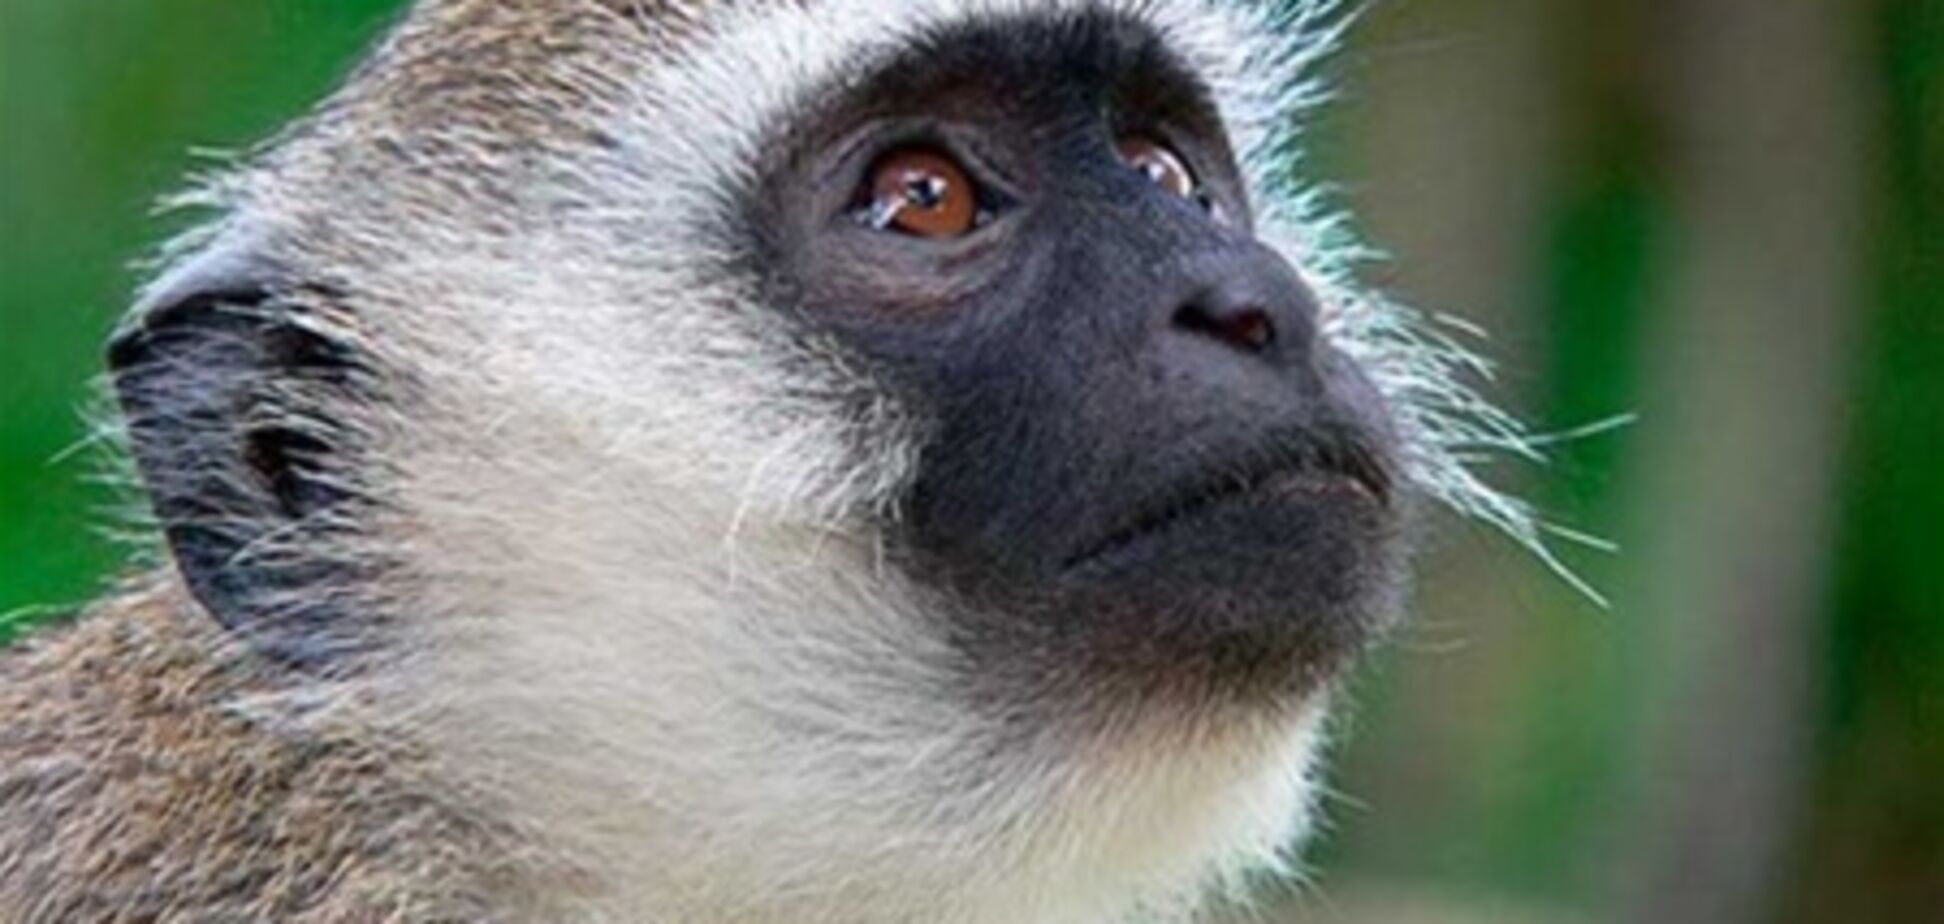 В Танзании найдены останки последнего предка обезьян и людей